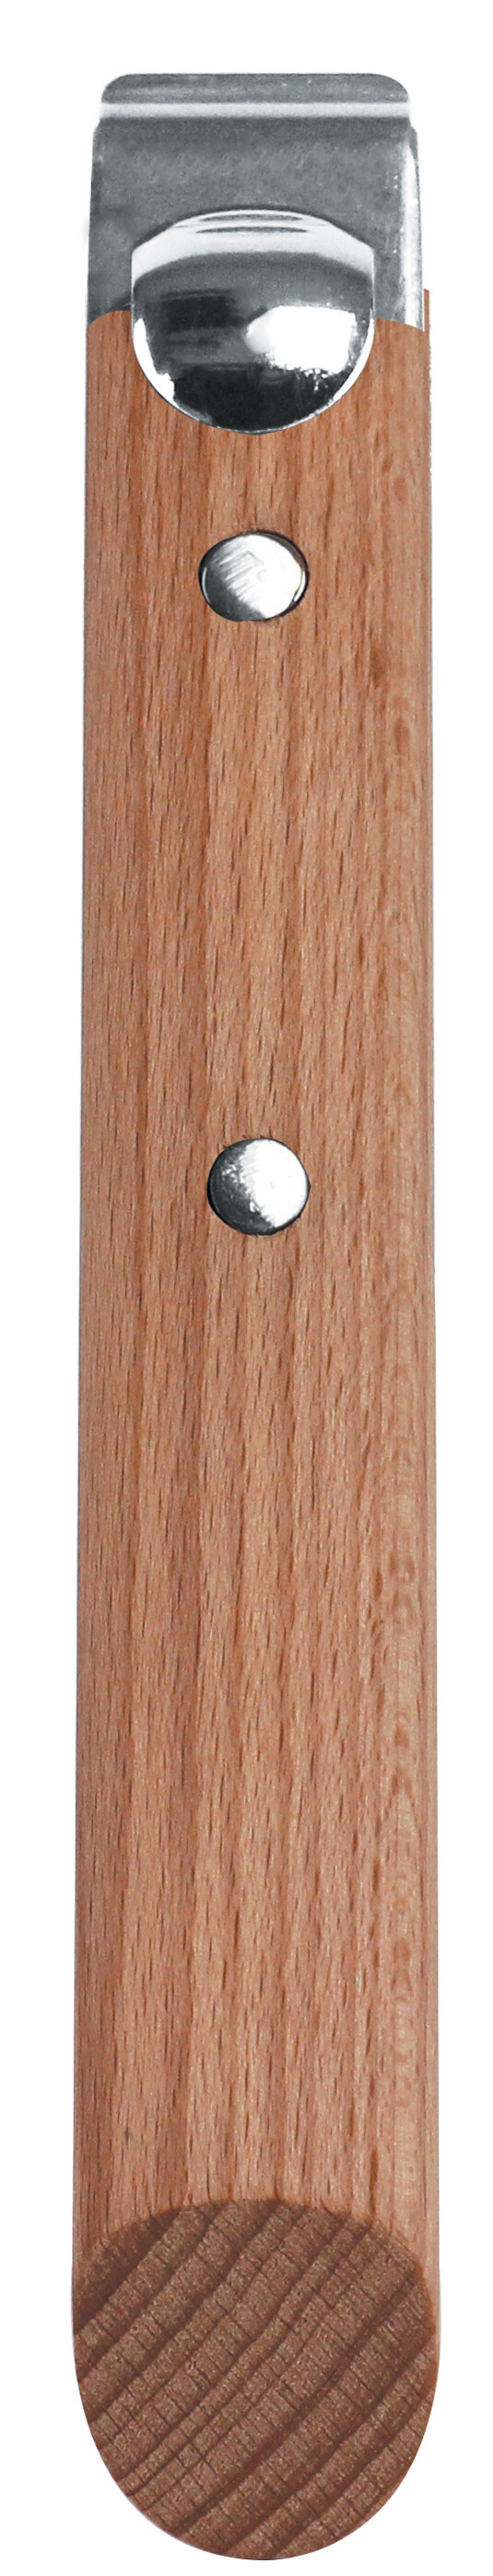 Poignée amovible CASTELINE bois hêtre de CRISTEL- Élégance et